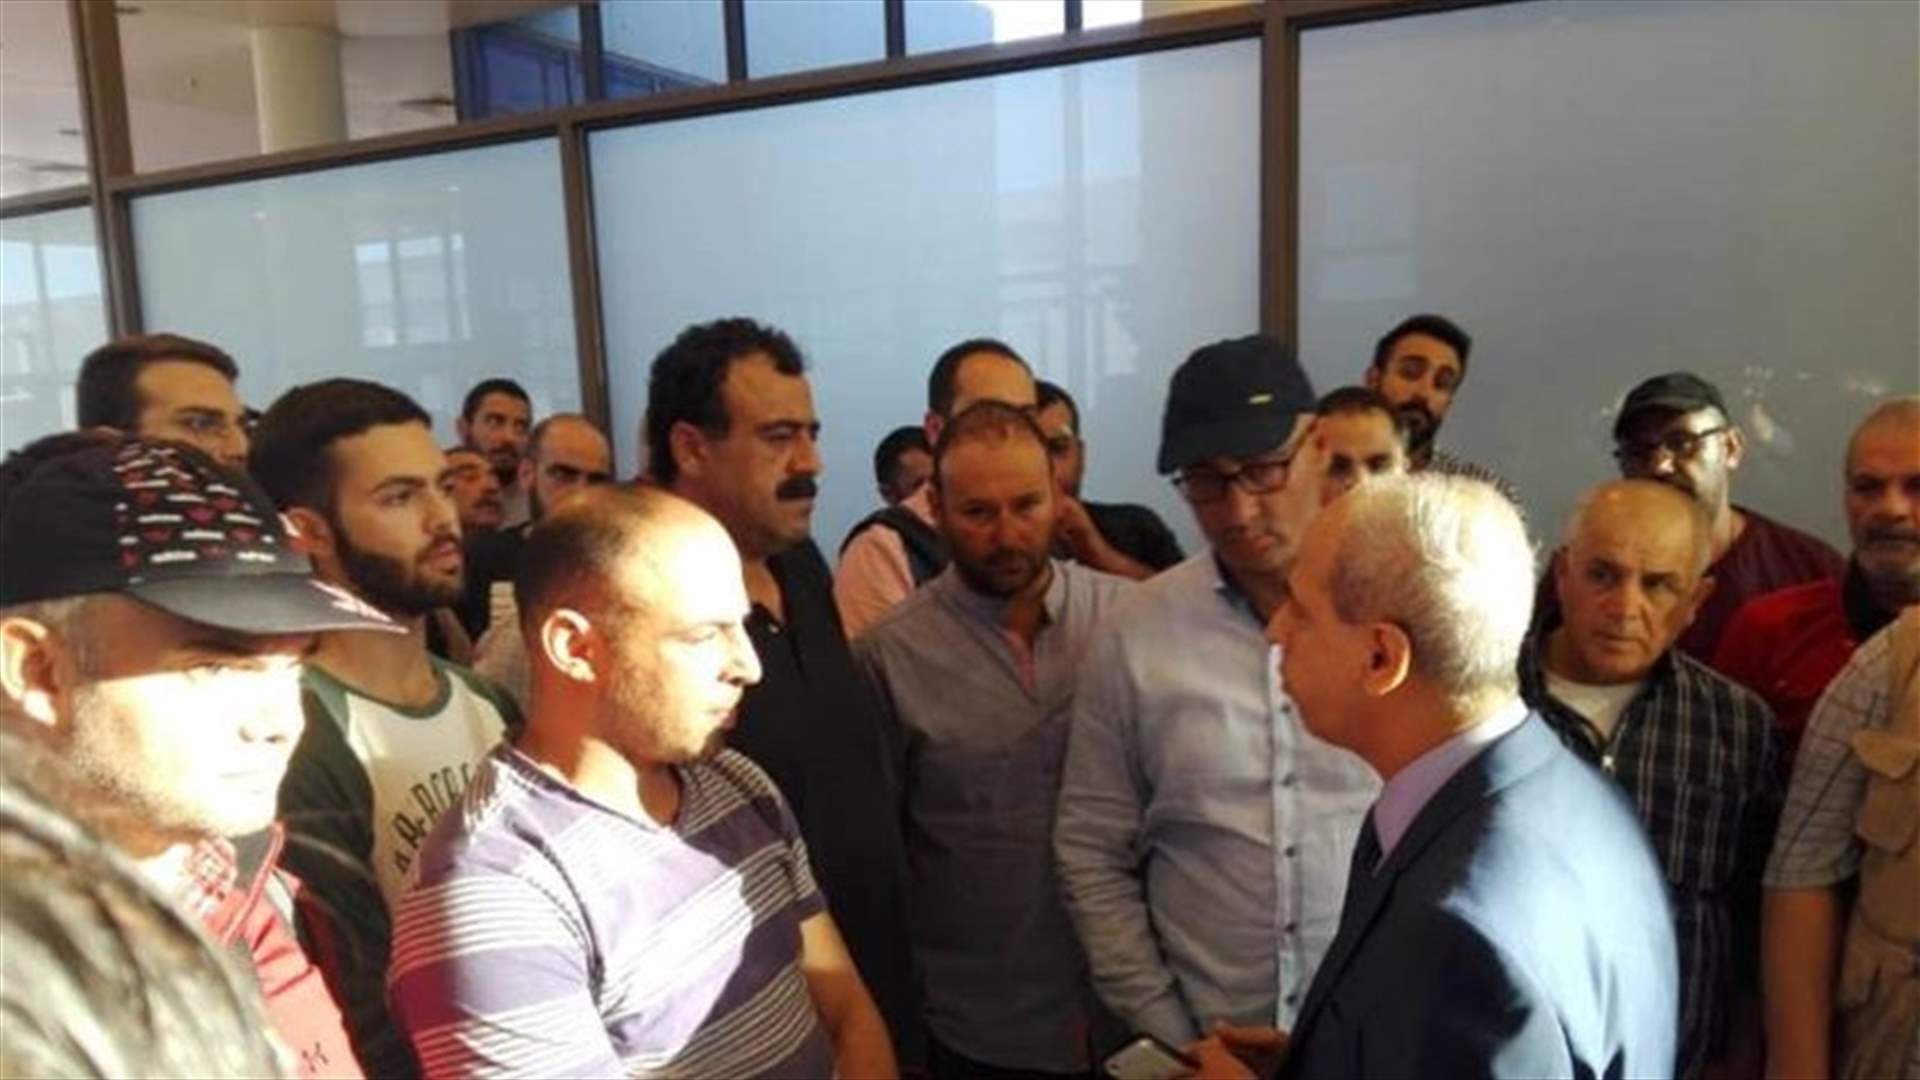 Kheir supervised return of Lebanese nationals from Kazakhstan